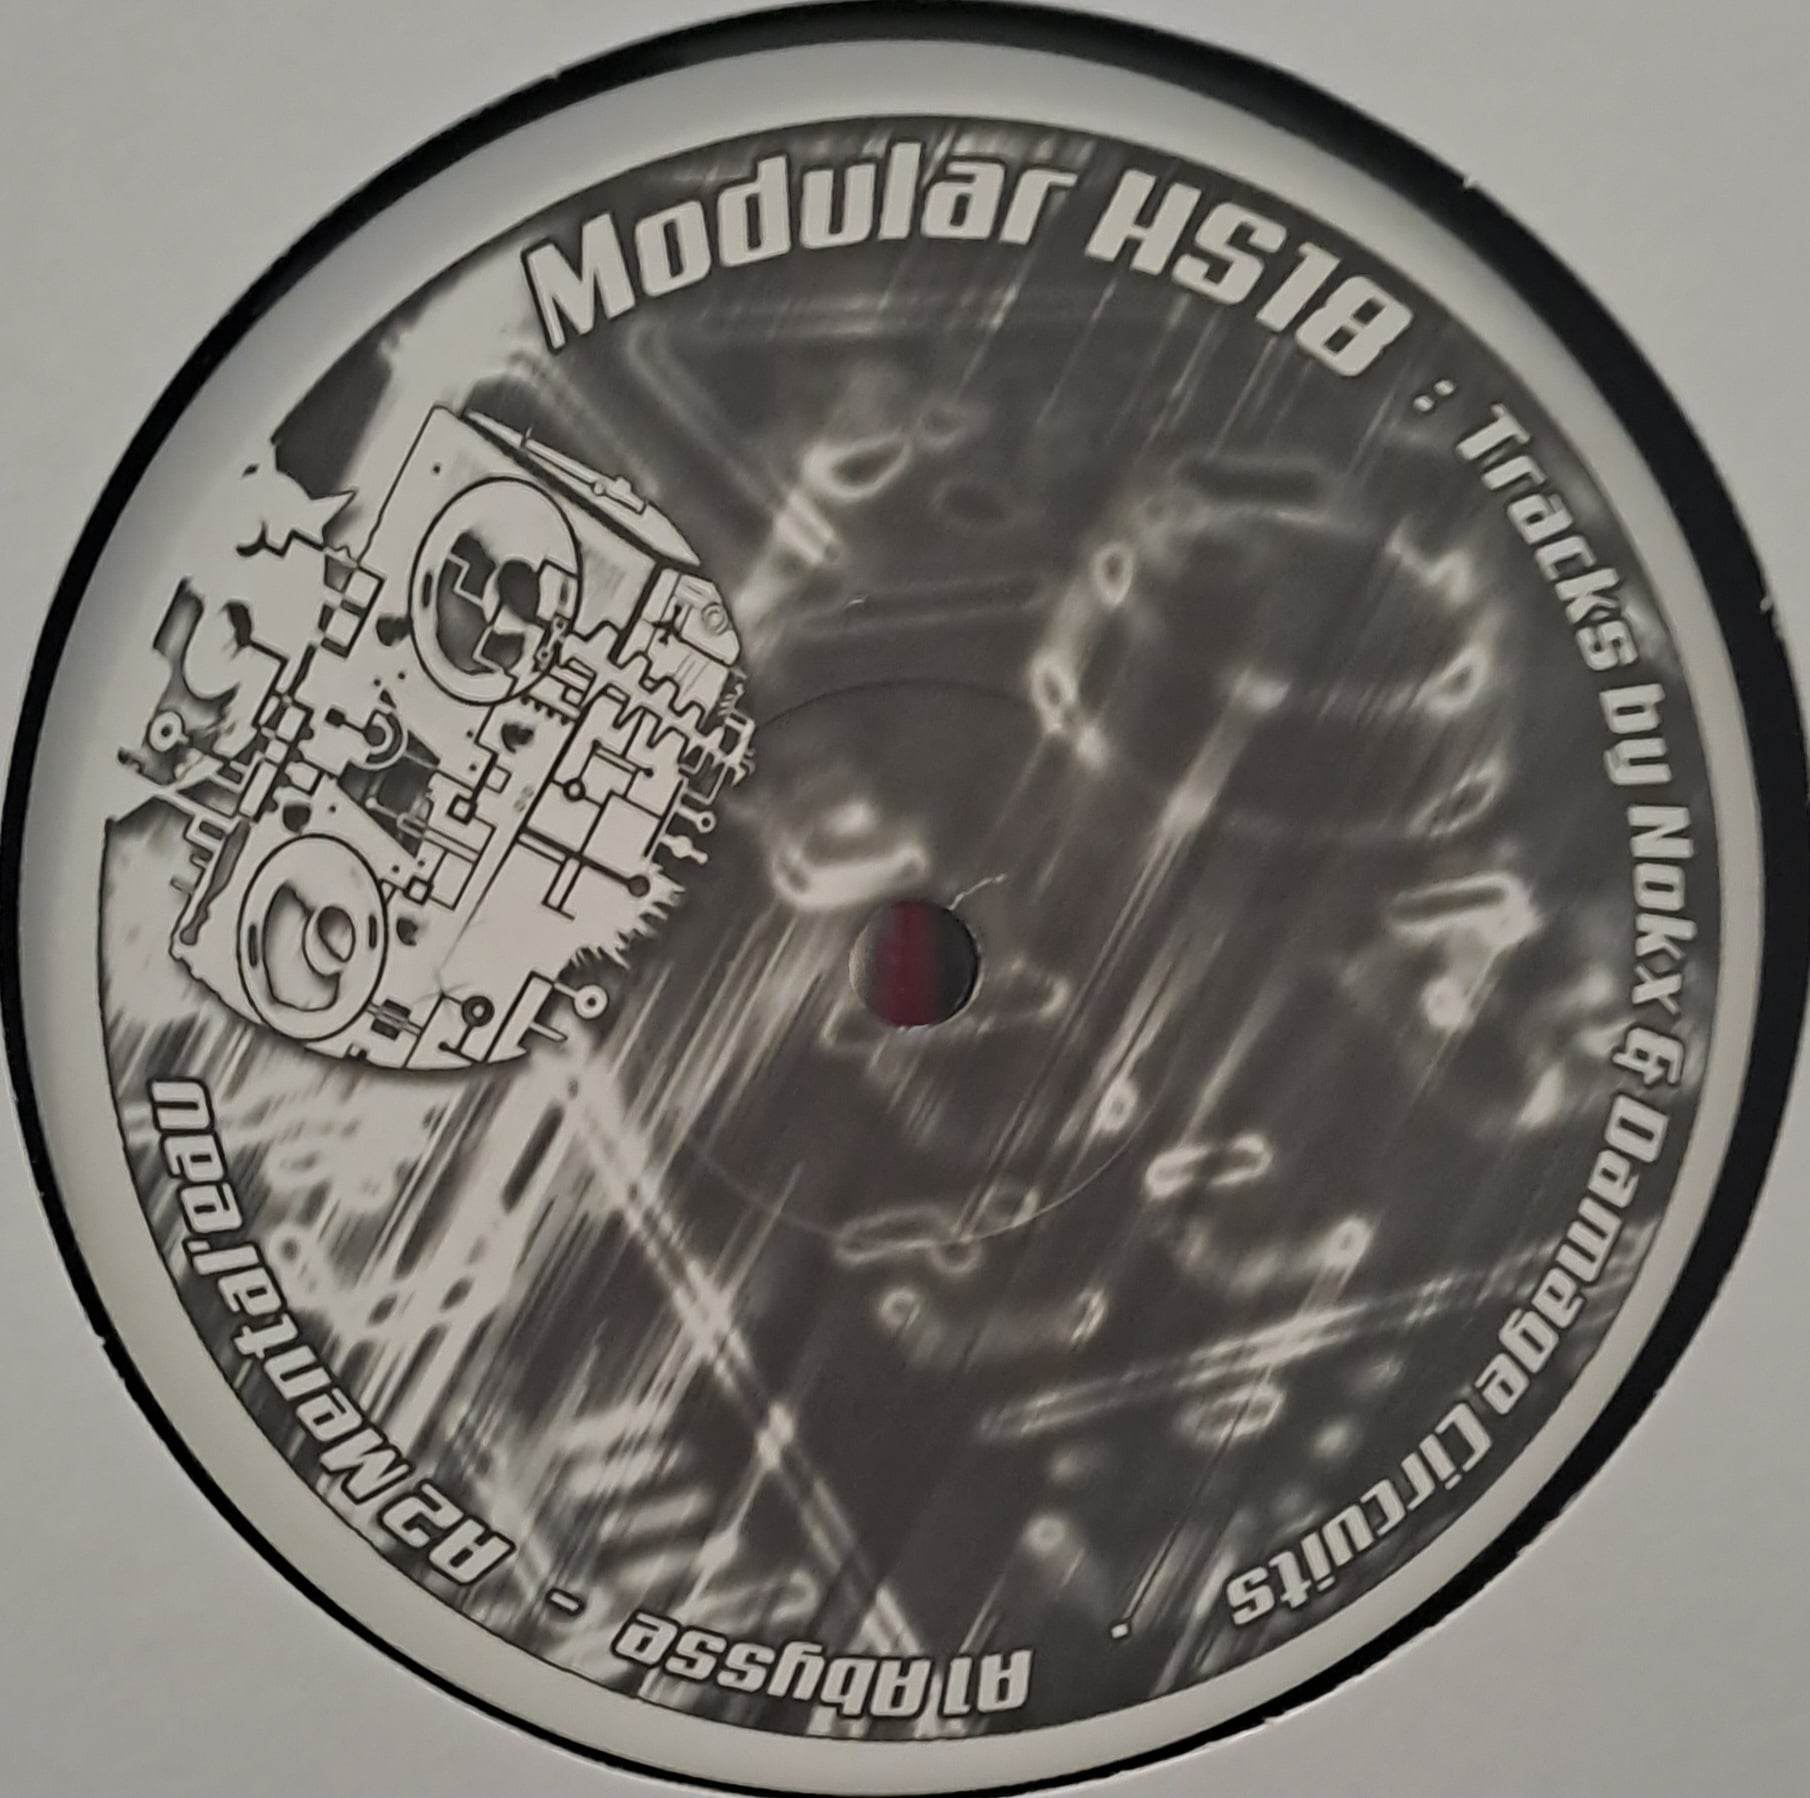 Modular HS 18 (toute dernière copie en stock) - vinyle freetekno